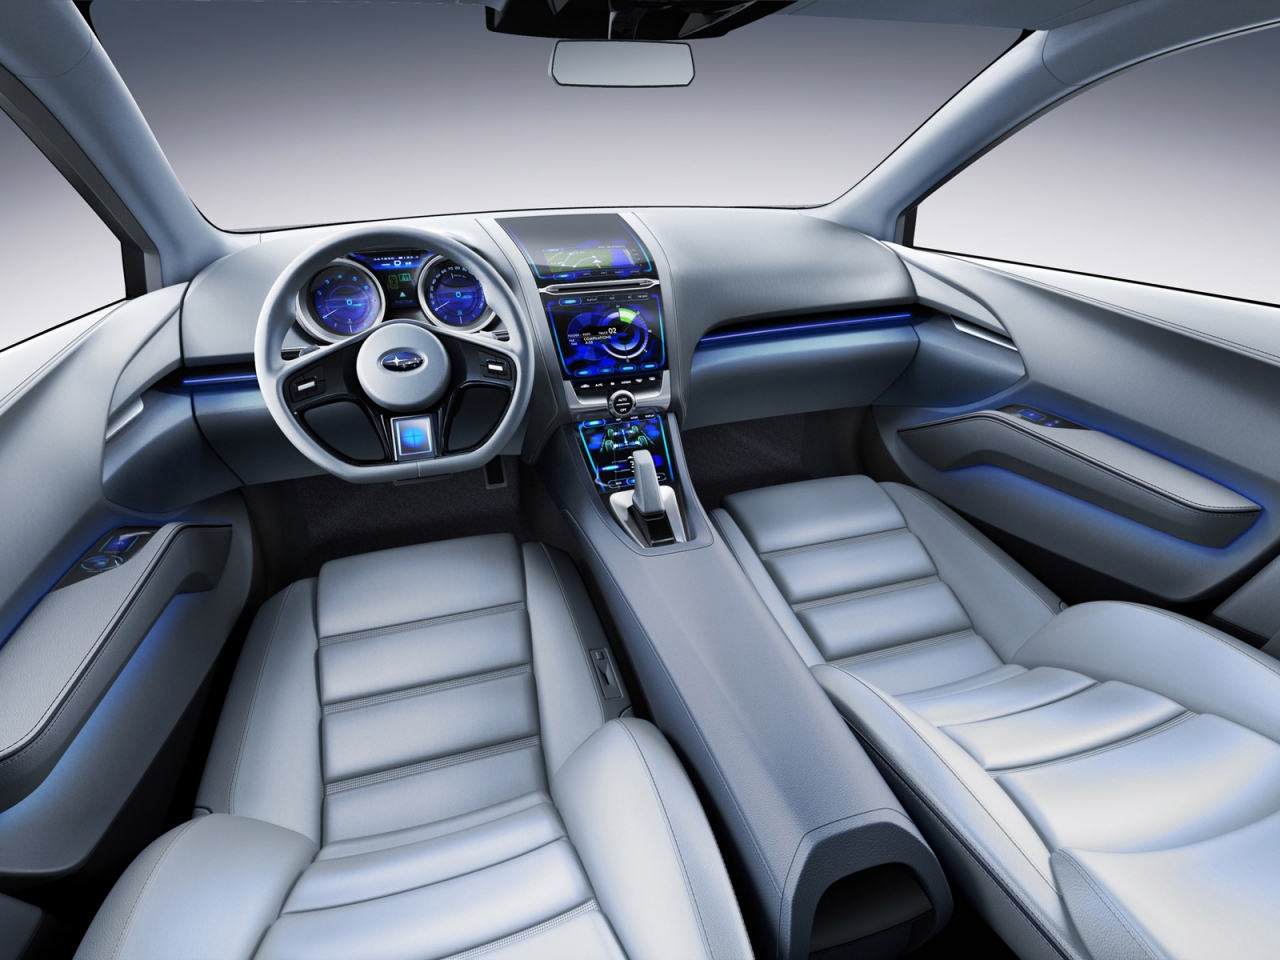 Subaru Impreza Concept Interior for 1280 x 960 resolution